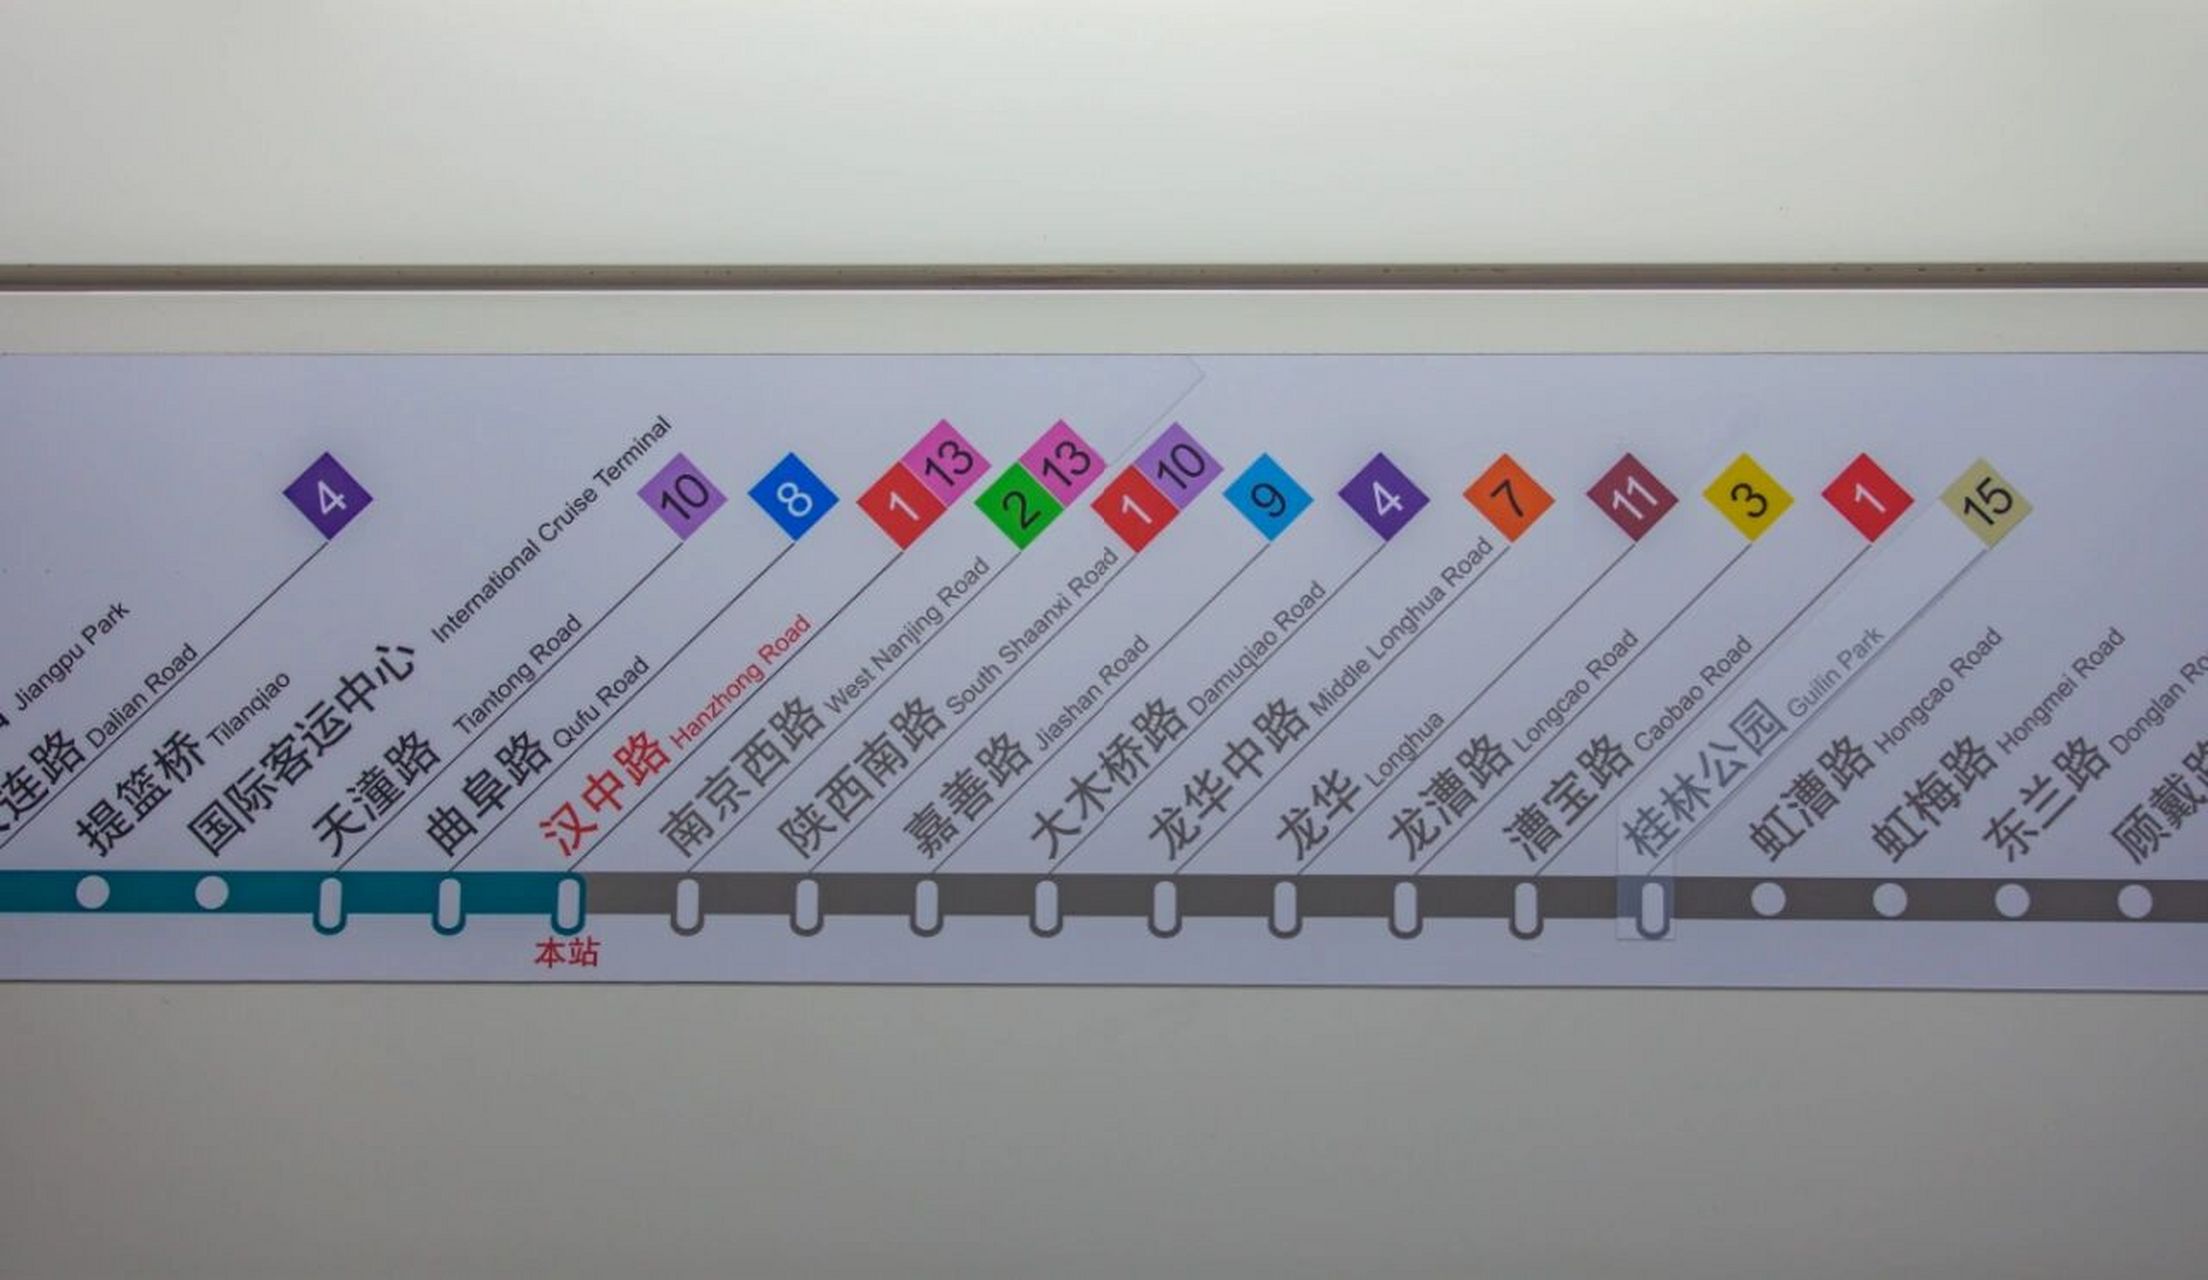 上海地铁12号线连续12个换乘站是无法超越的存在,一条线路